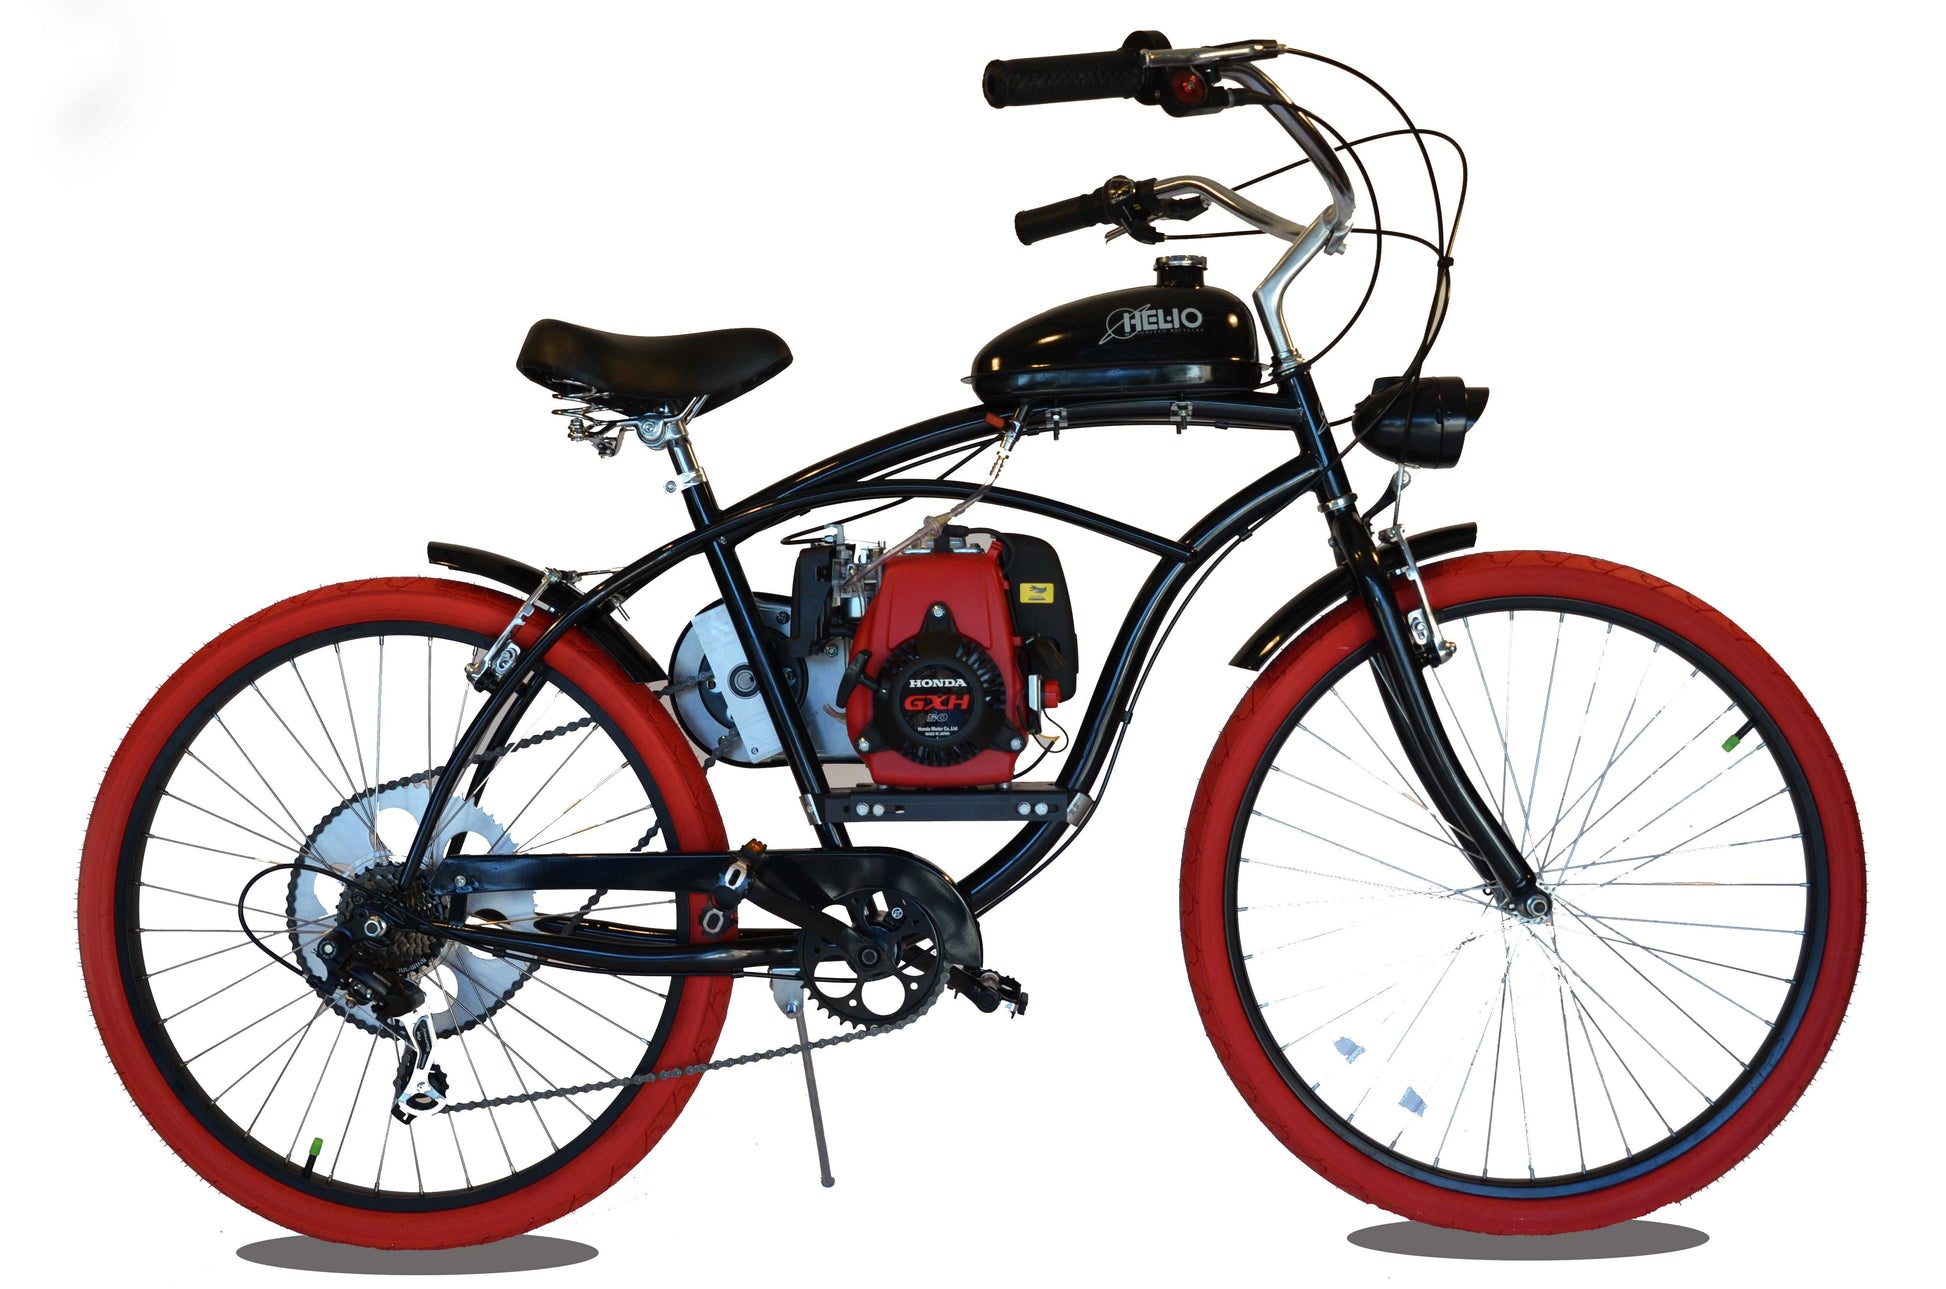 Basic 49cc EZM Motorized Bicycle